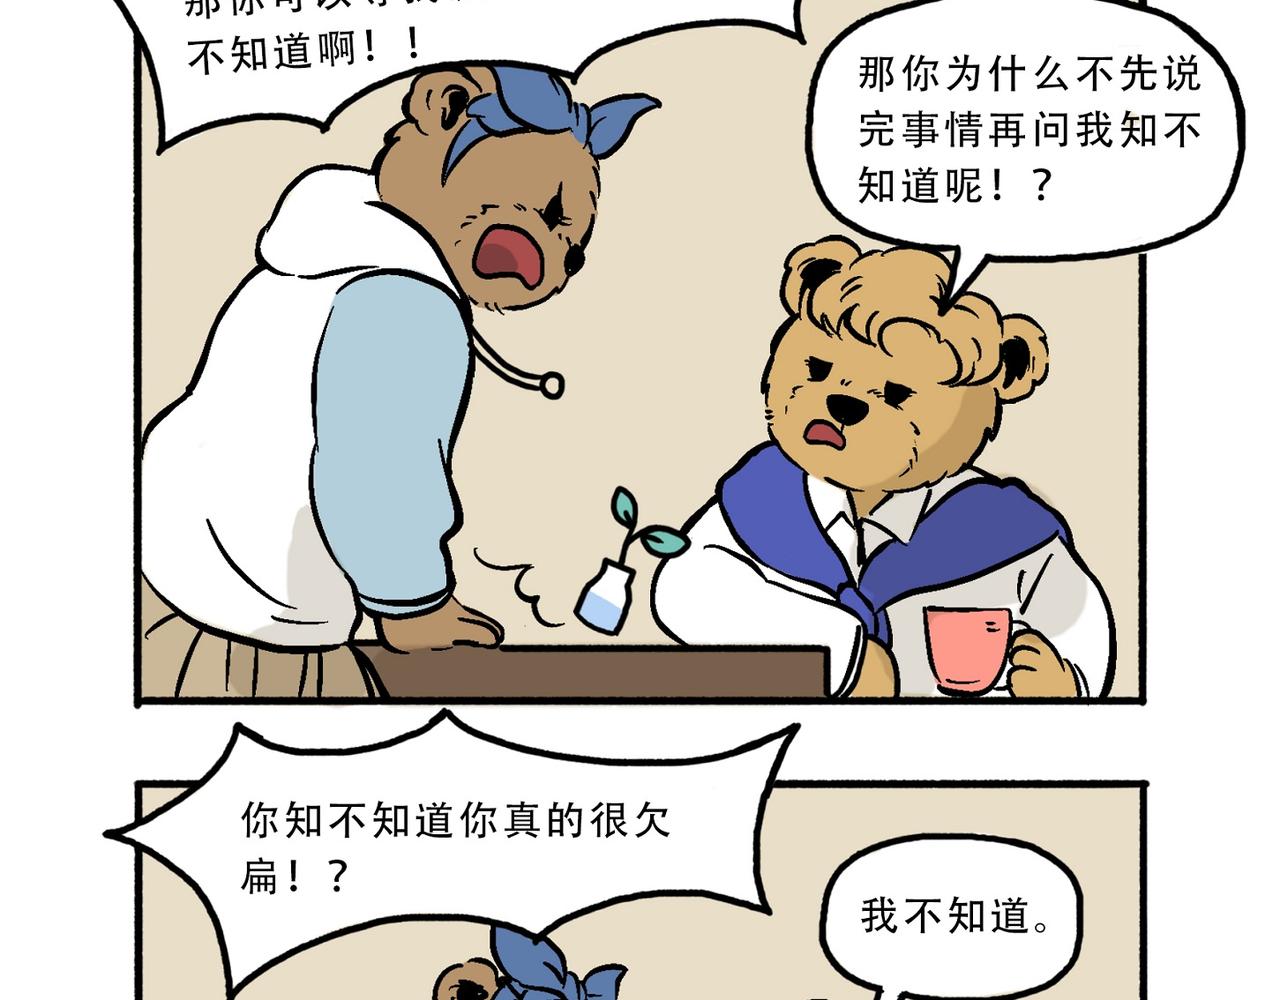 熊研所迷你劇場 - 買耳環/我不知道/貓屎 - 1